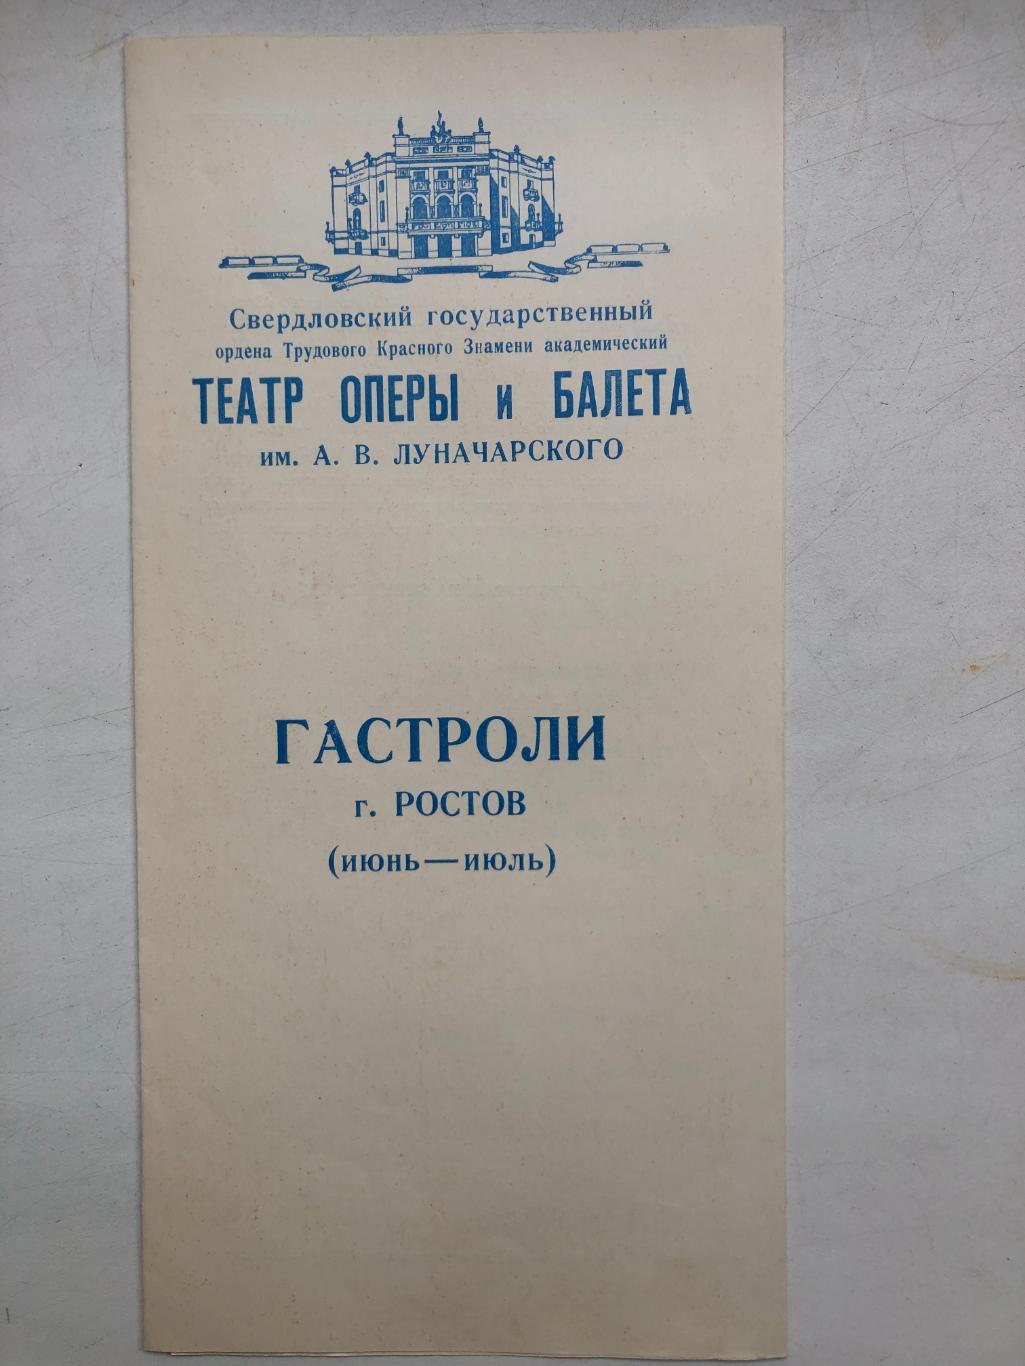 Программа Свердловского театра оперы и балета 1970